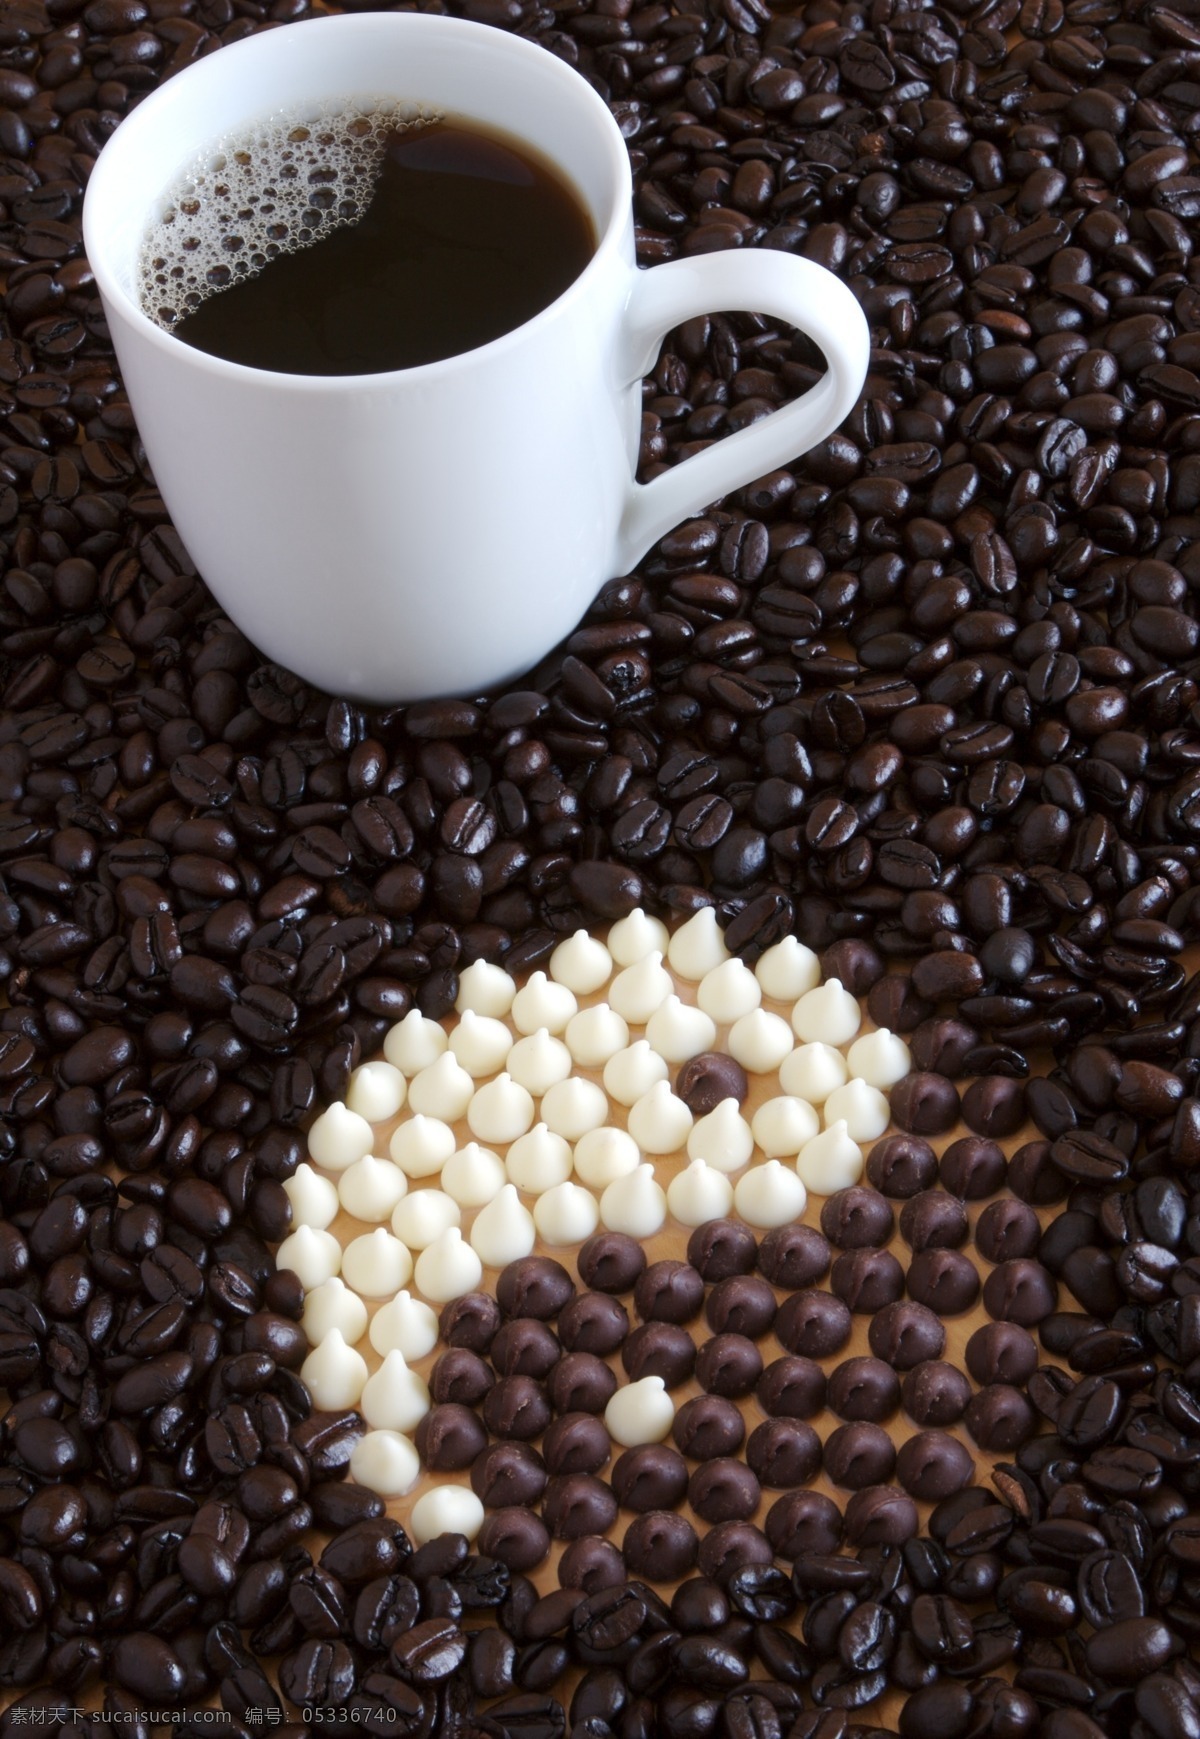 阴阳 图案 咖啡 阴阳咖啡 咖啡杯 糖 咖啡文化 高清图片 阴阳图案 一杯咖啡 咖啡图片 餐饮美食